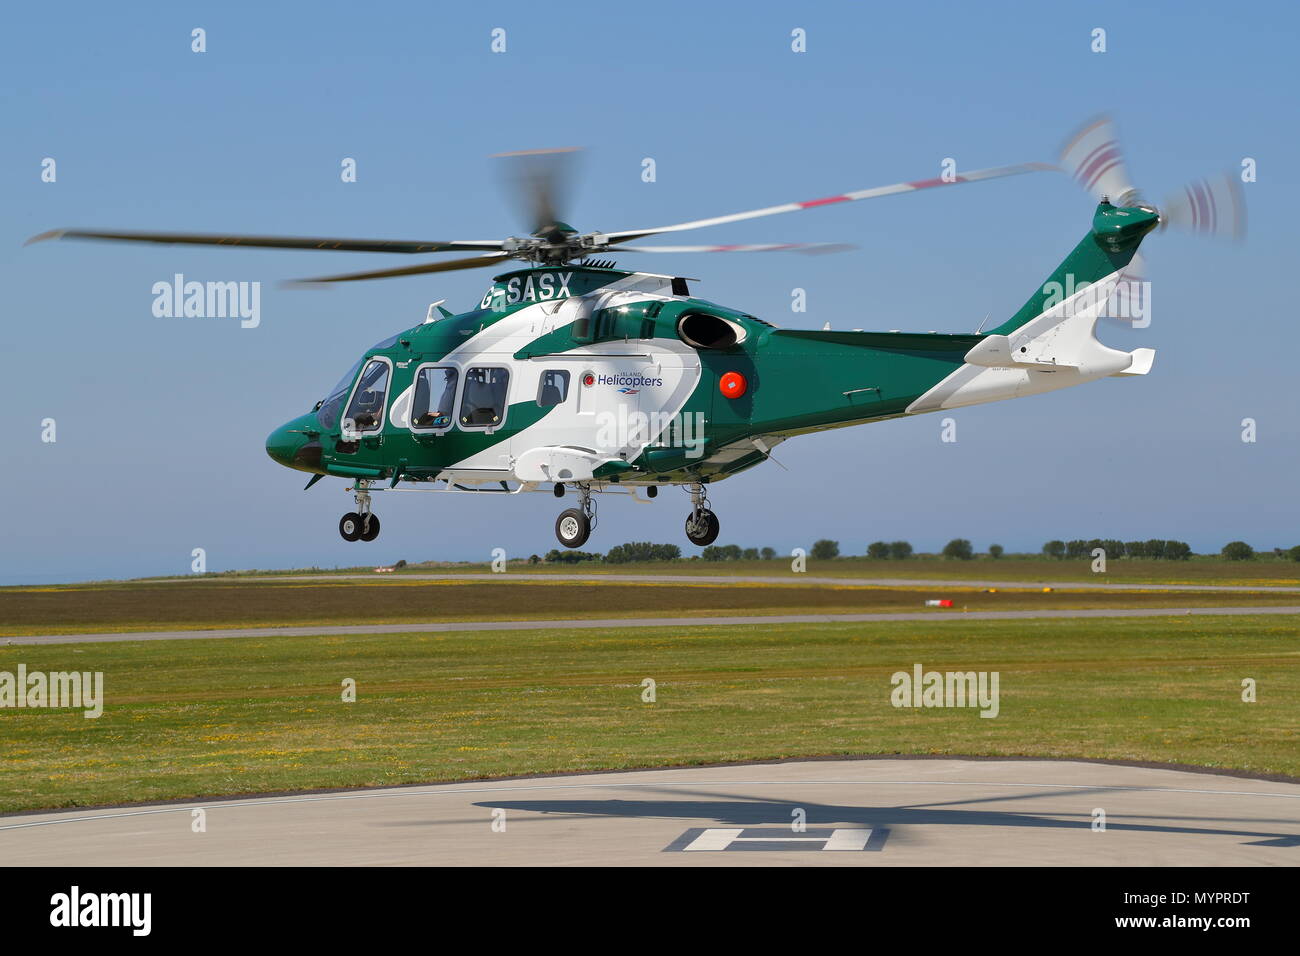 AgustaWestland AW169 G-SASX der Insel Hubschrauber zieht aus Lands End Flughafen mit Passagieren zu St Mary's, Scilly-inseln, Großbritannien Stockfoto